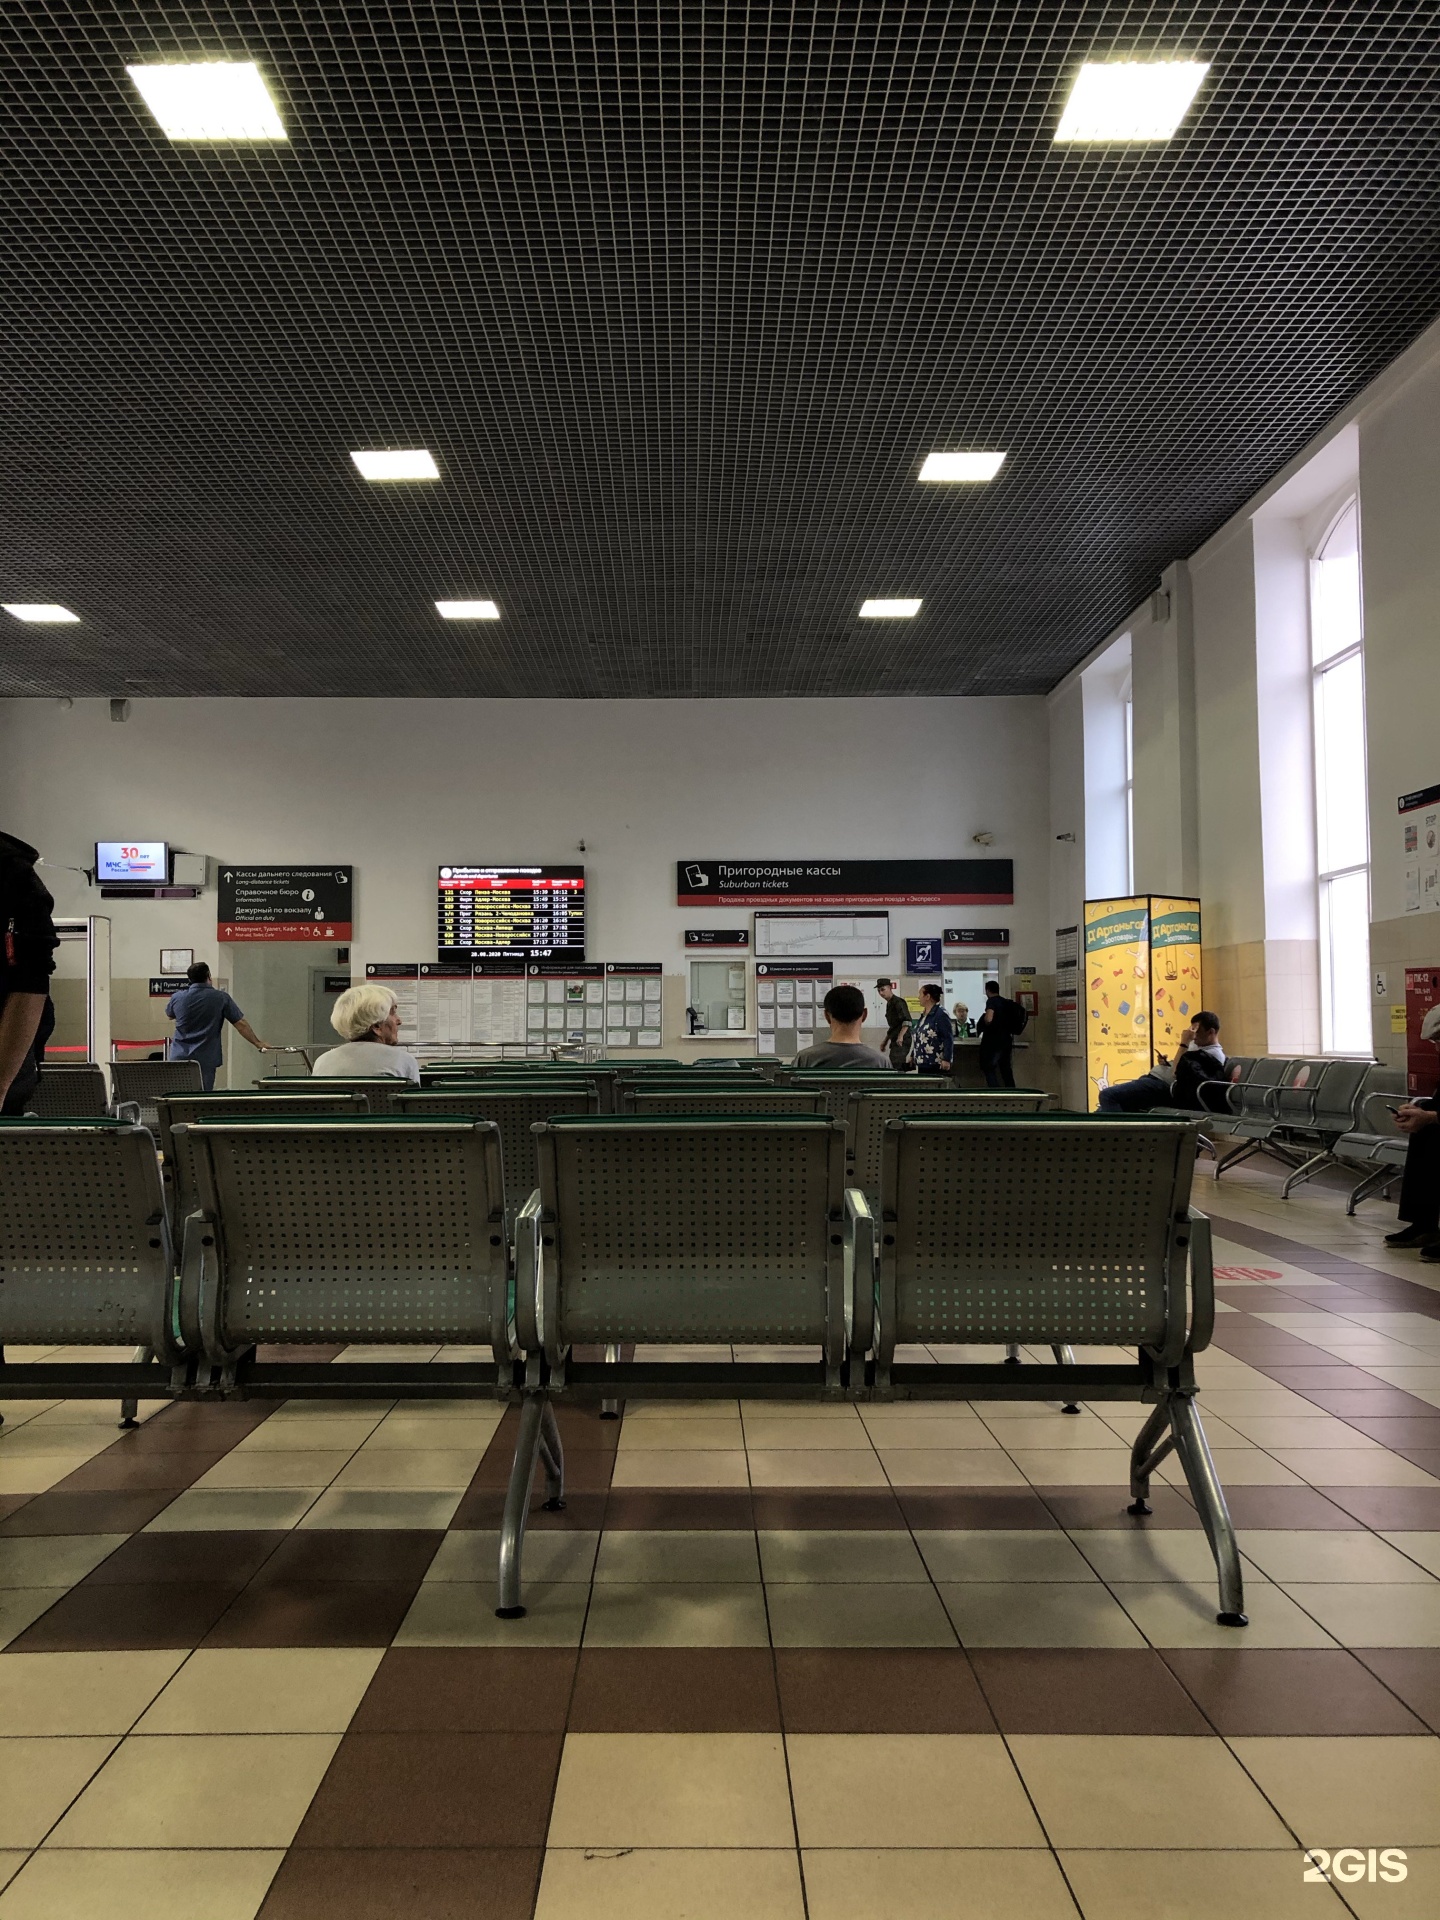 железнодорожный вокзал рязань